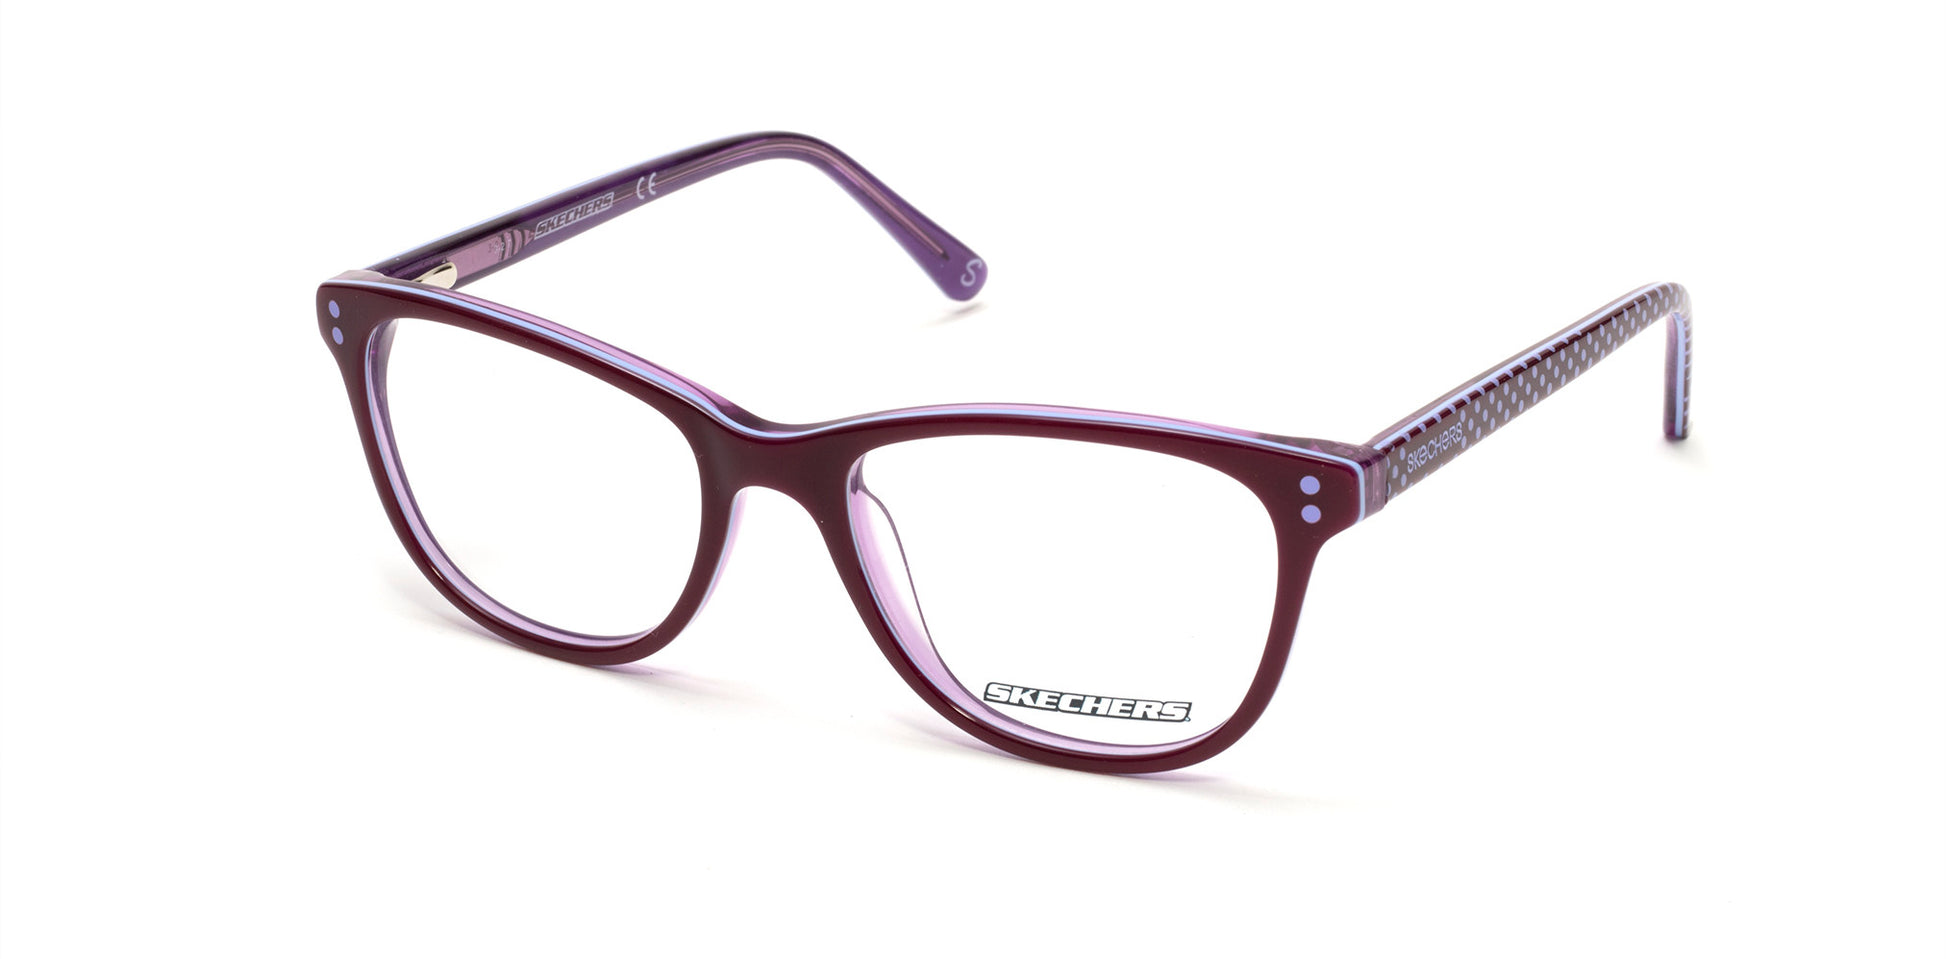 Skechers SE1631 Round Eyeglasses 081-081 - Shiny Violet